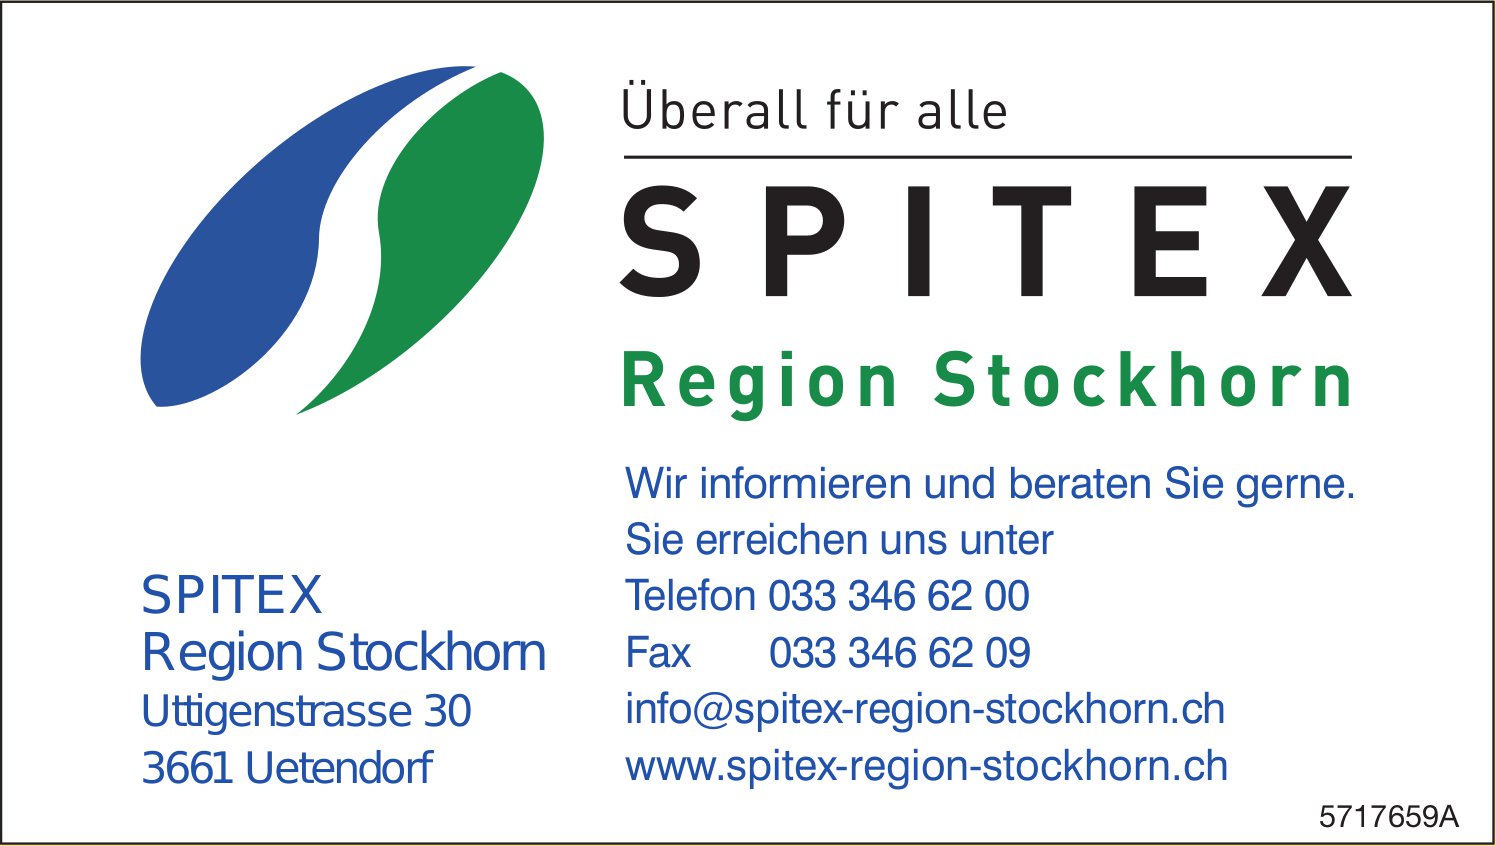 Spitex Region Stockhorn, Uetendorf - Wir informieren und beraten Sie gerne.